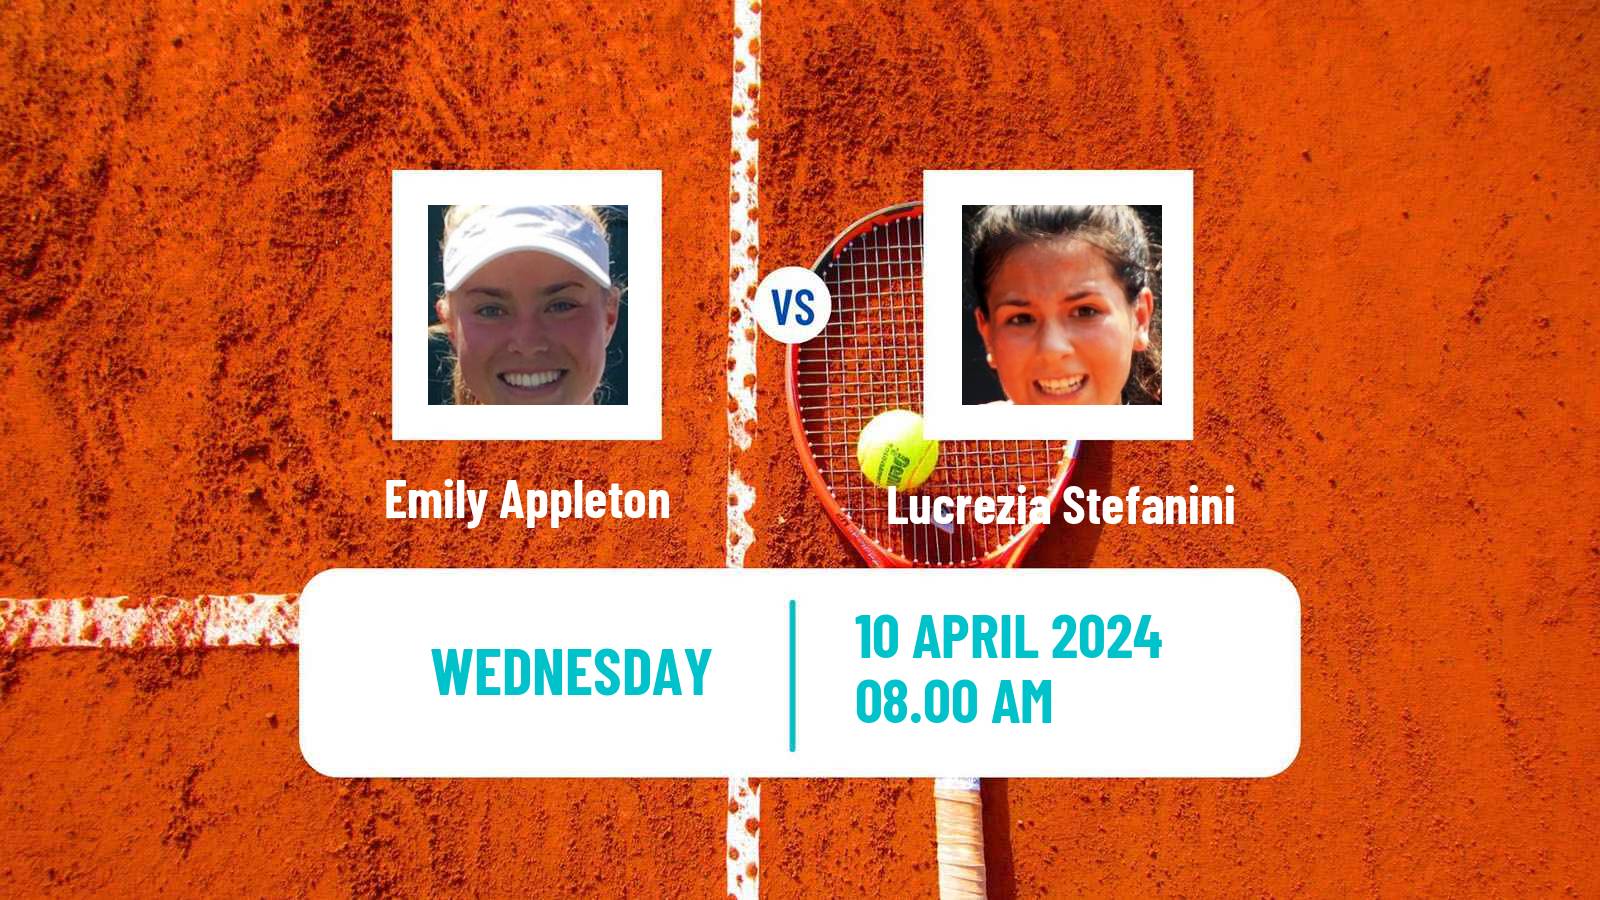 Tennis ITF W75 Bellinzona Women Emily Appleton - Lucrezia Stefanini